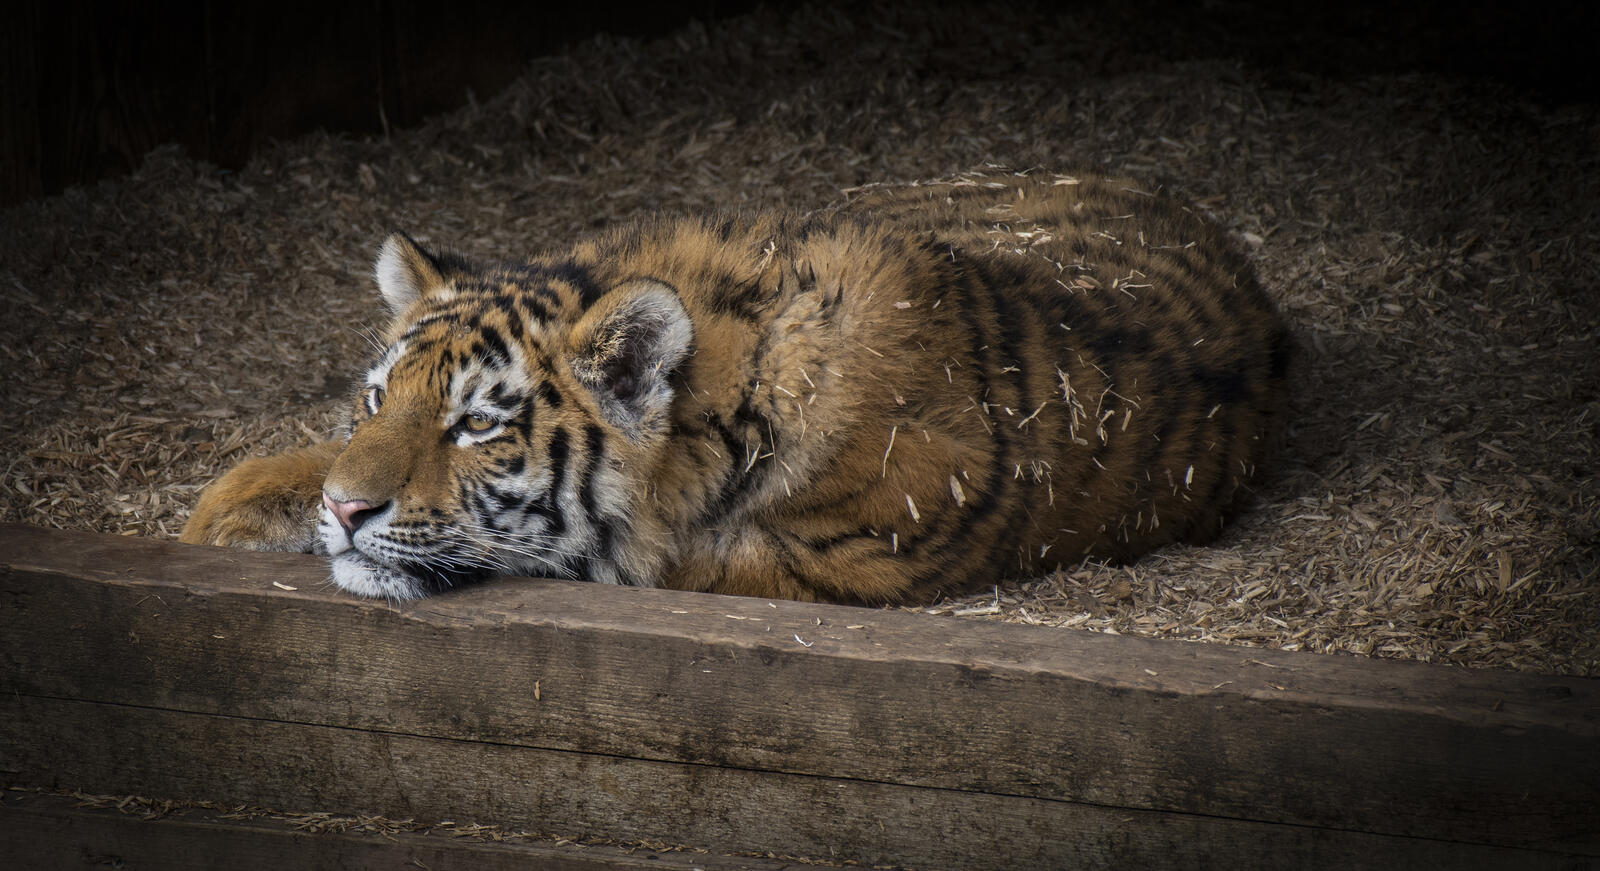 Wallpapers panthera tigris altaica big cat Amur tiger on the desktop